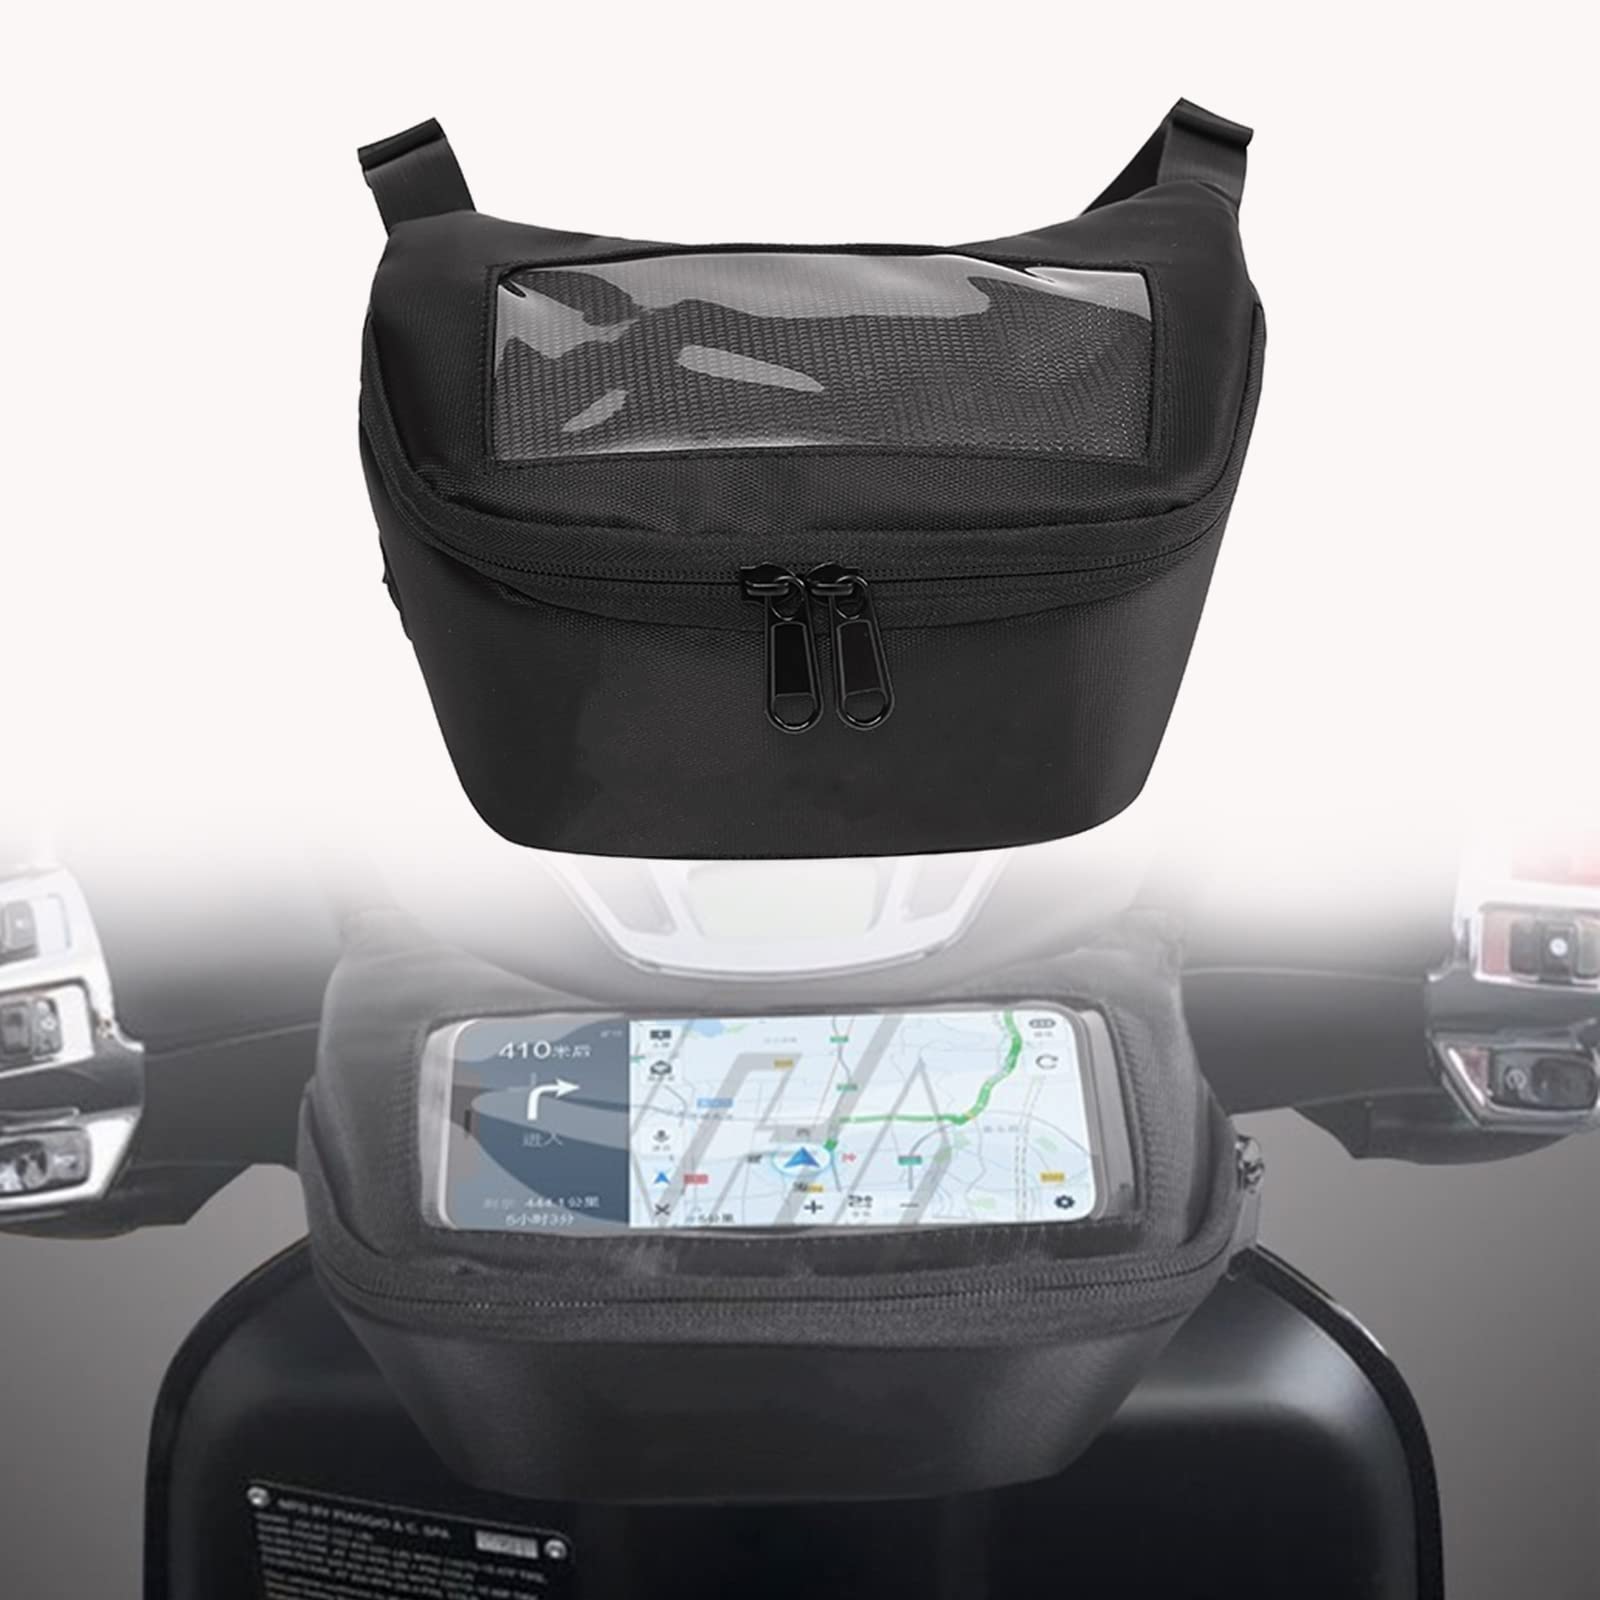 Heinmo Motorrad Universal Satteltaschen Lenker Aufbewahrungstasche Handy Touchscreen Kopfhörer wasserdichte Tasche für Nmax155 Nmax150 Nmax125 NVX155 AEROX155 von Heinmo